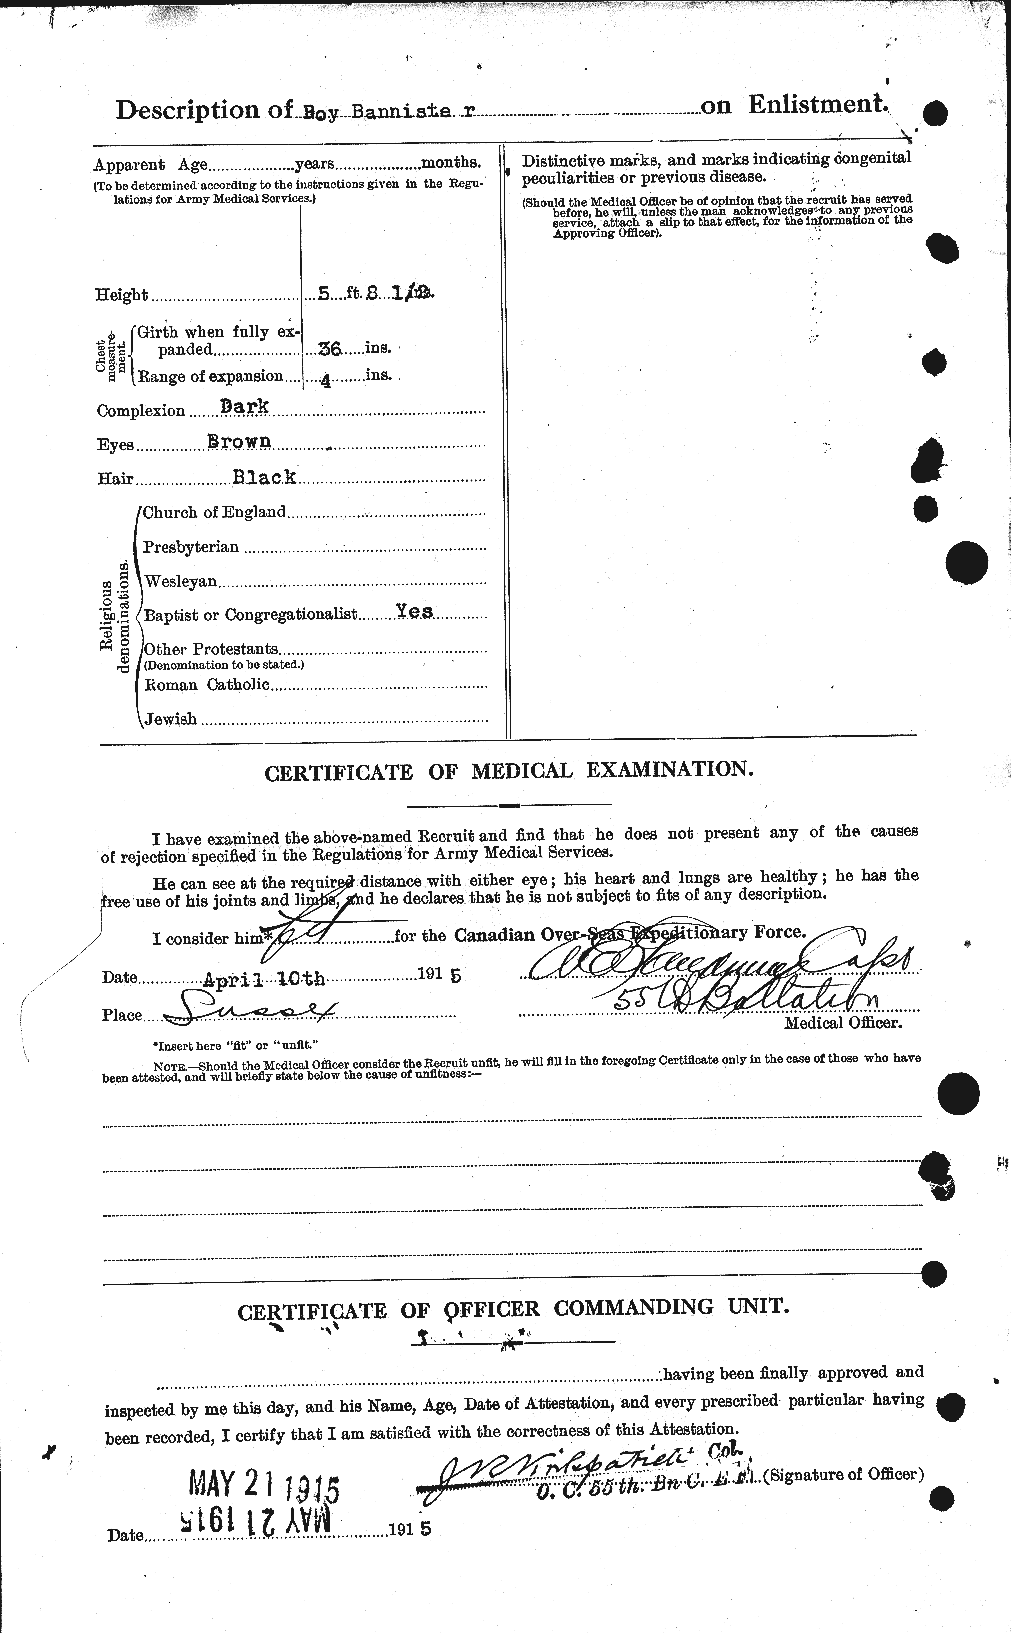 Dossiers du Personnel de la Première Guerre mondiale - CEC 224767b